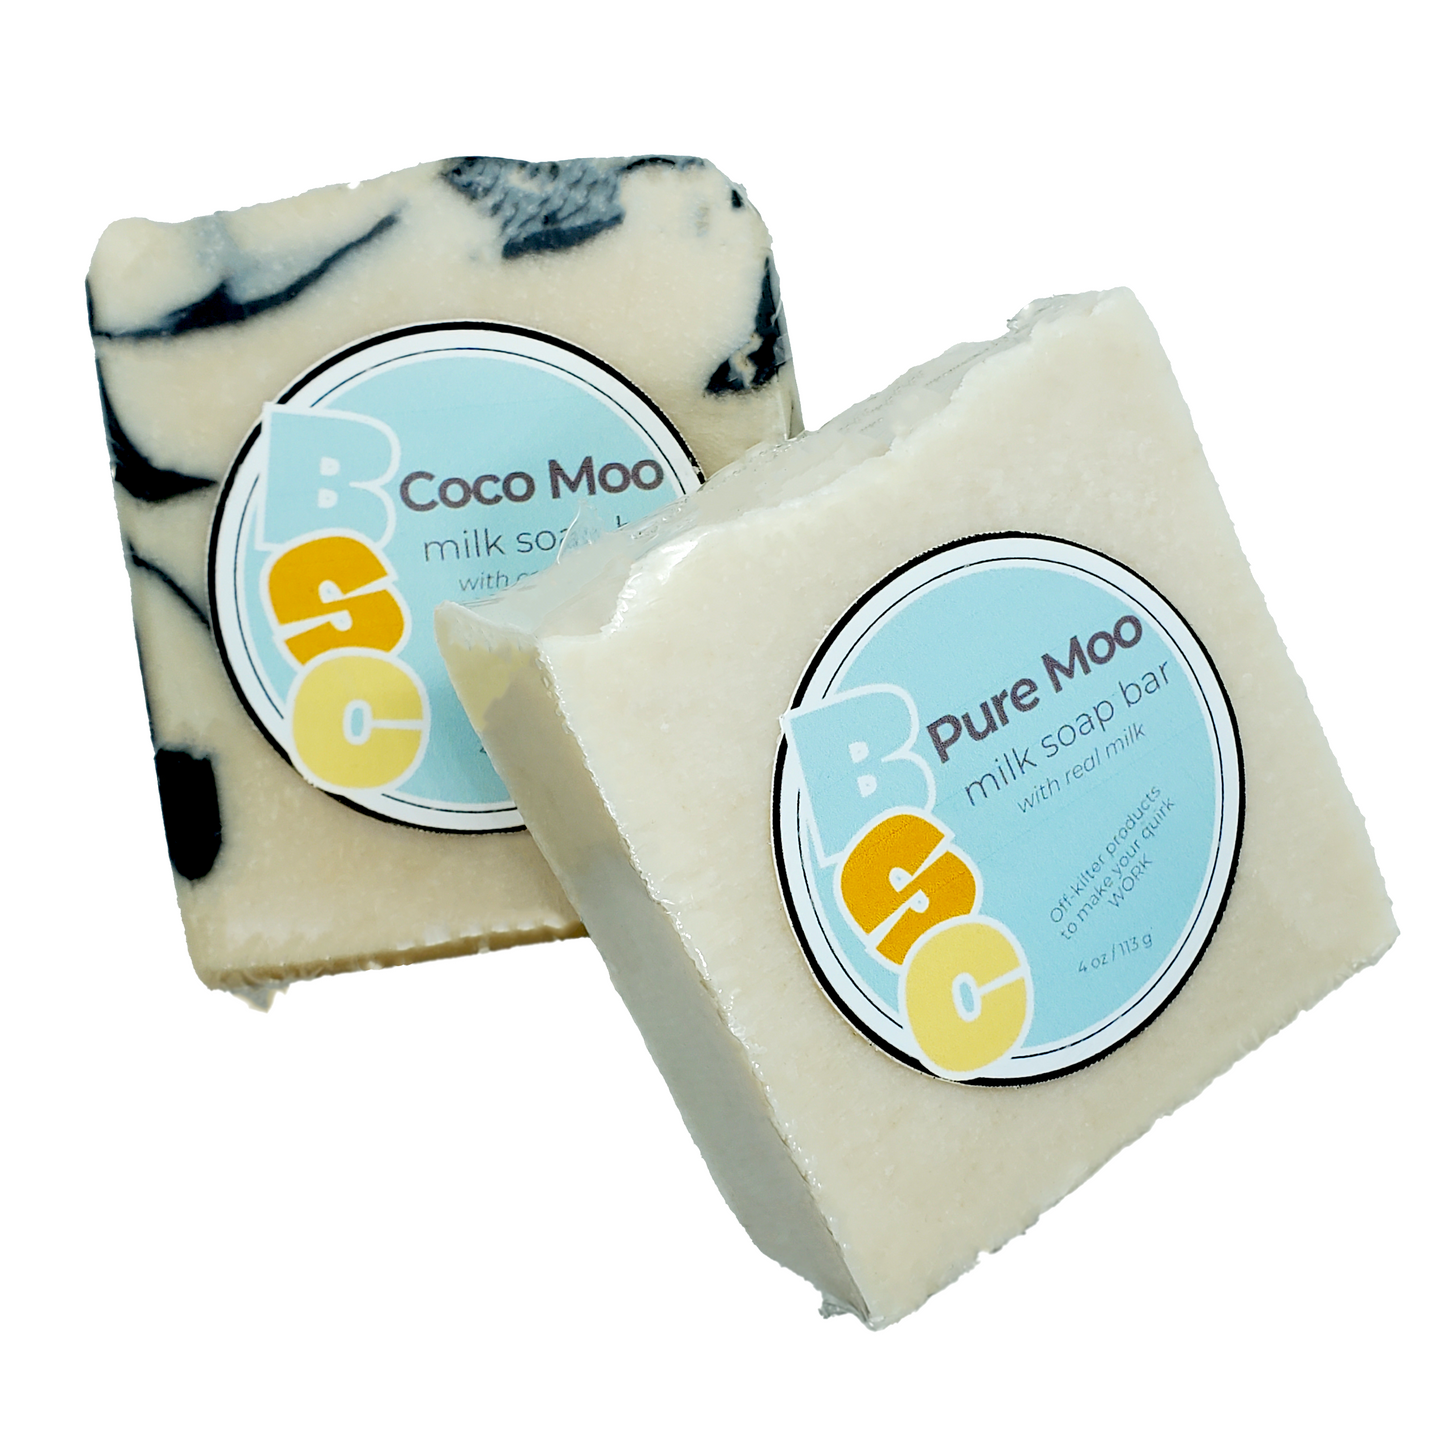 Pure Moo milk bar soap